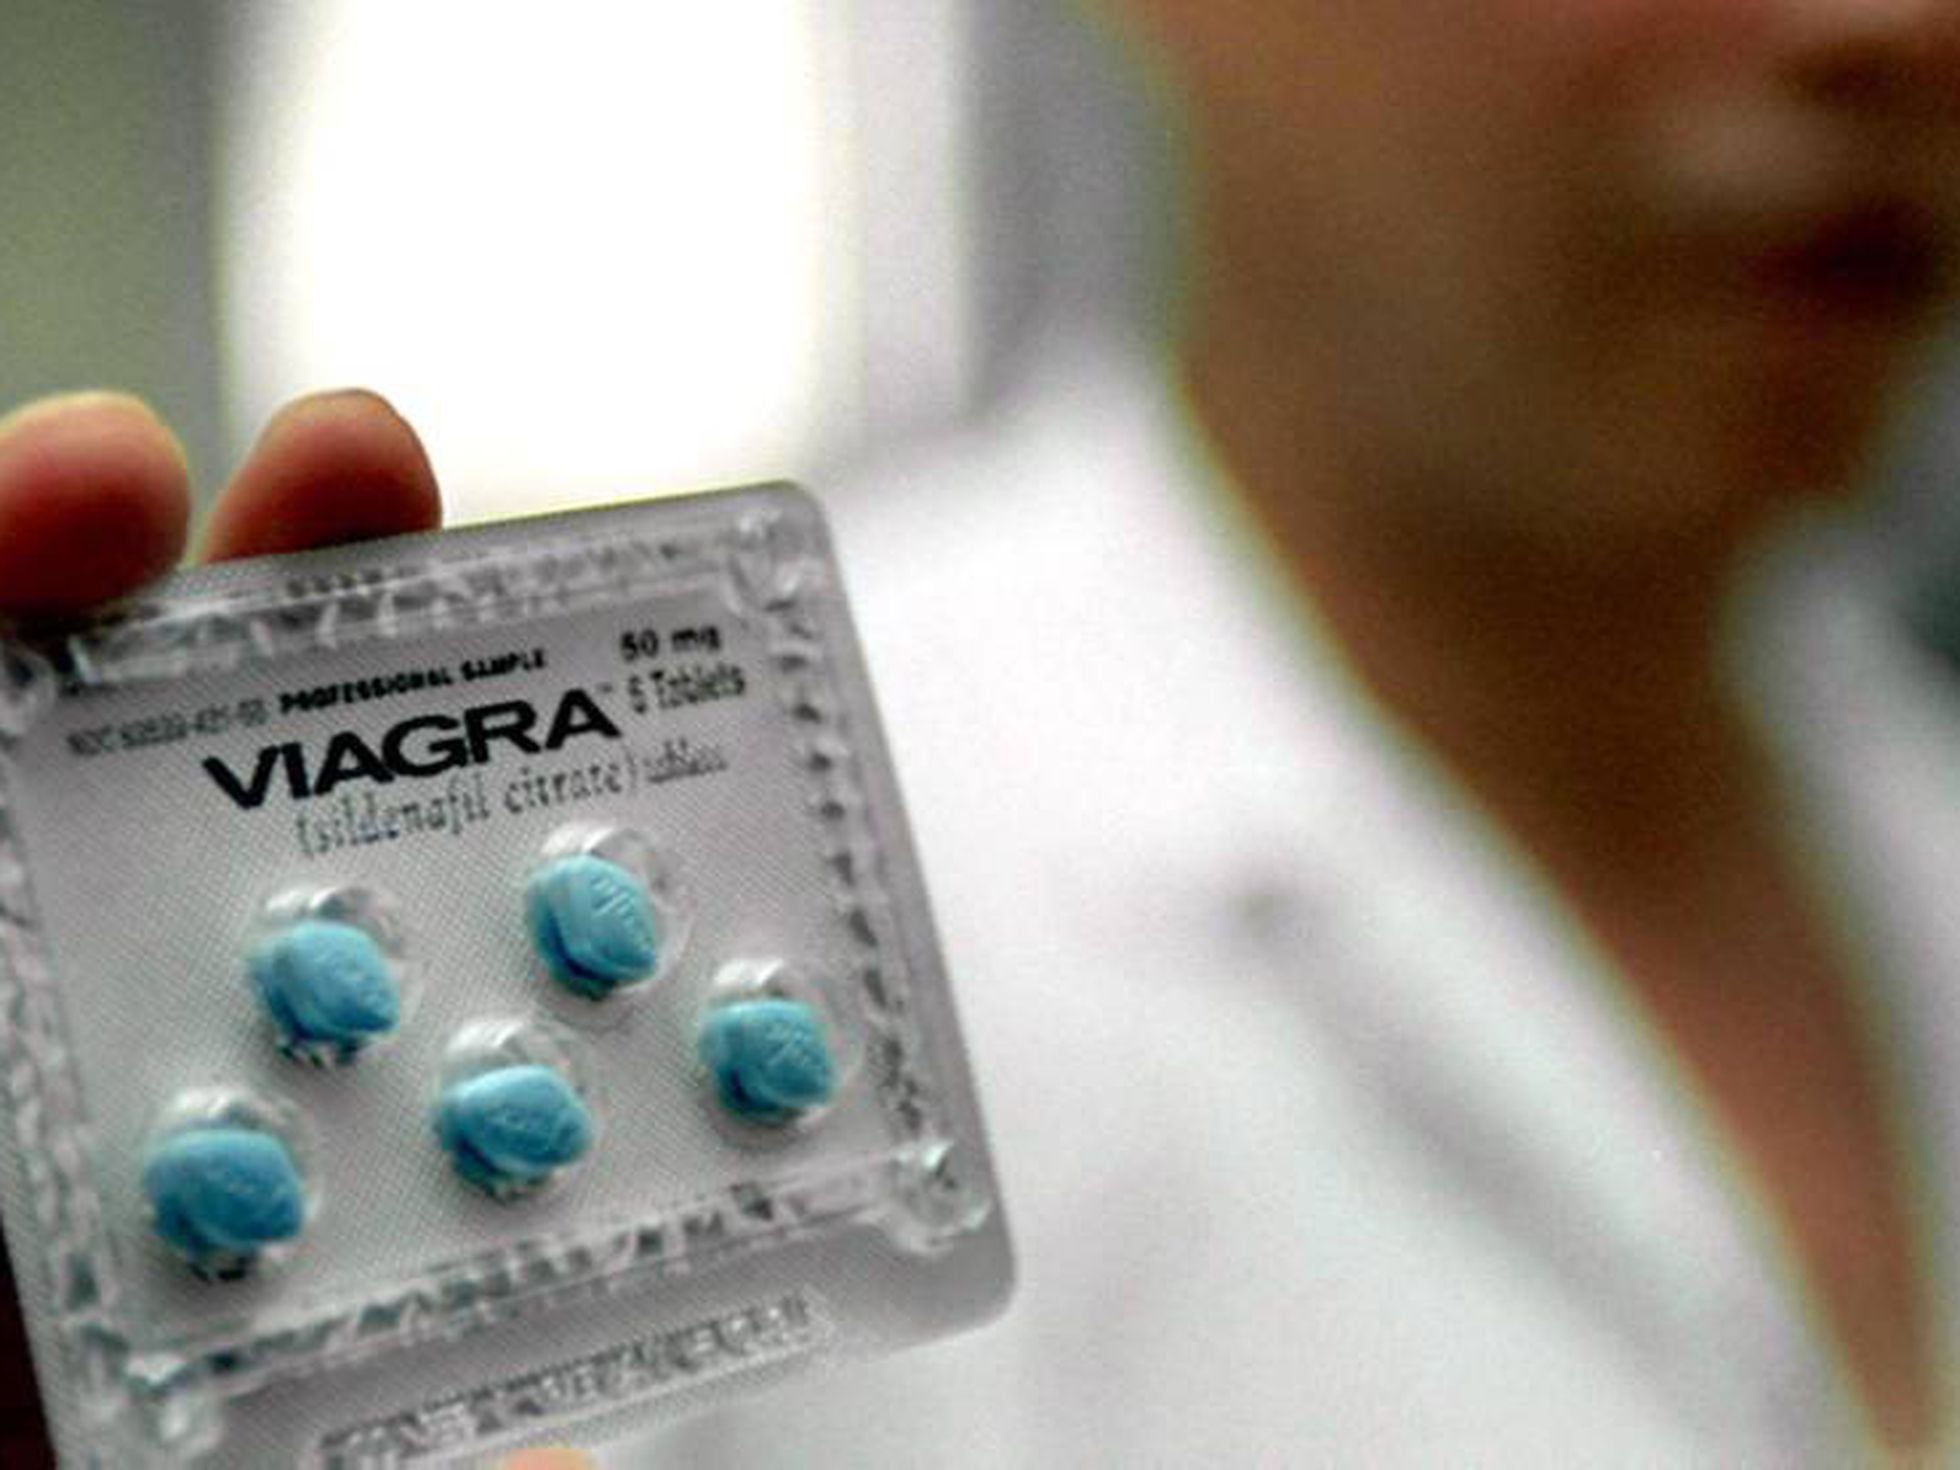 Peticionario los Traición Viagra: la pastillita azul que revolucionó el sexo cumple 20 años |  Economía | EL PAÍS